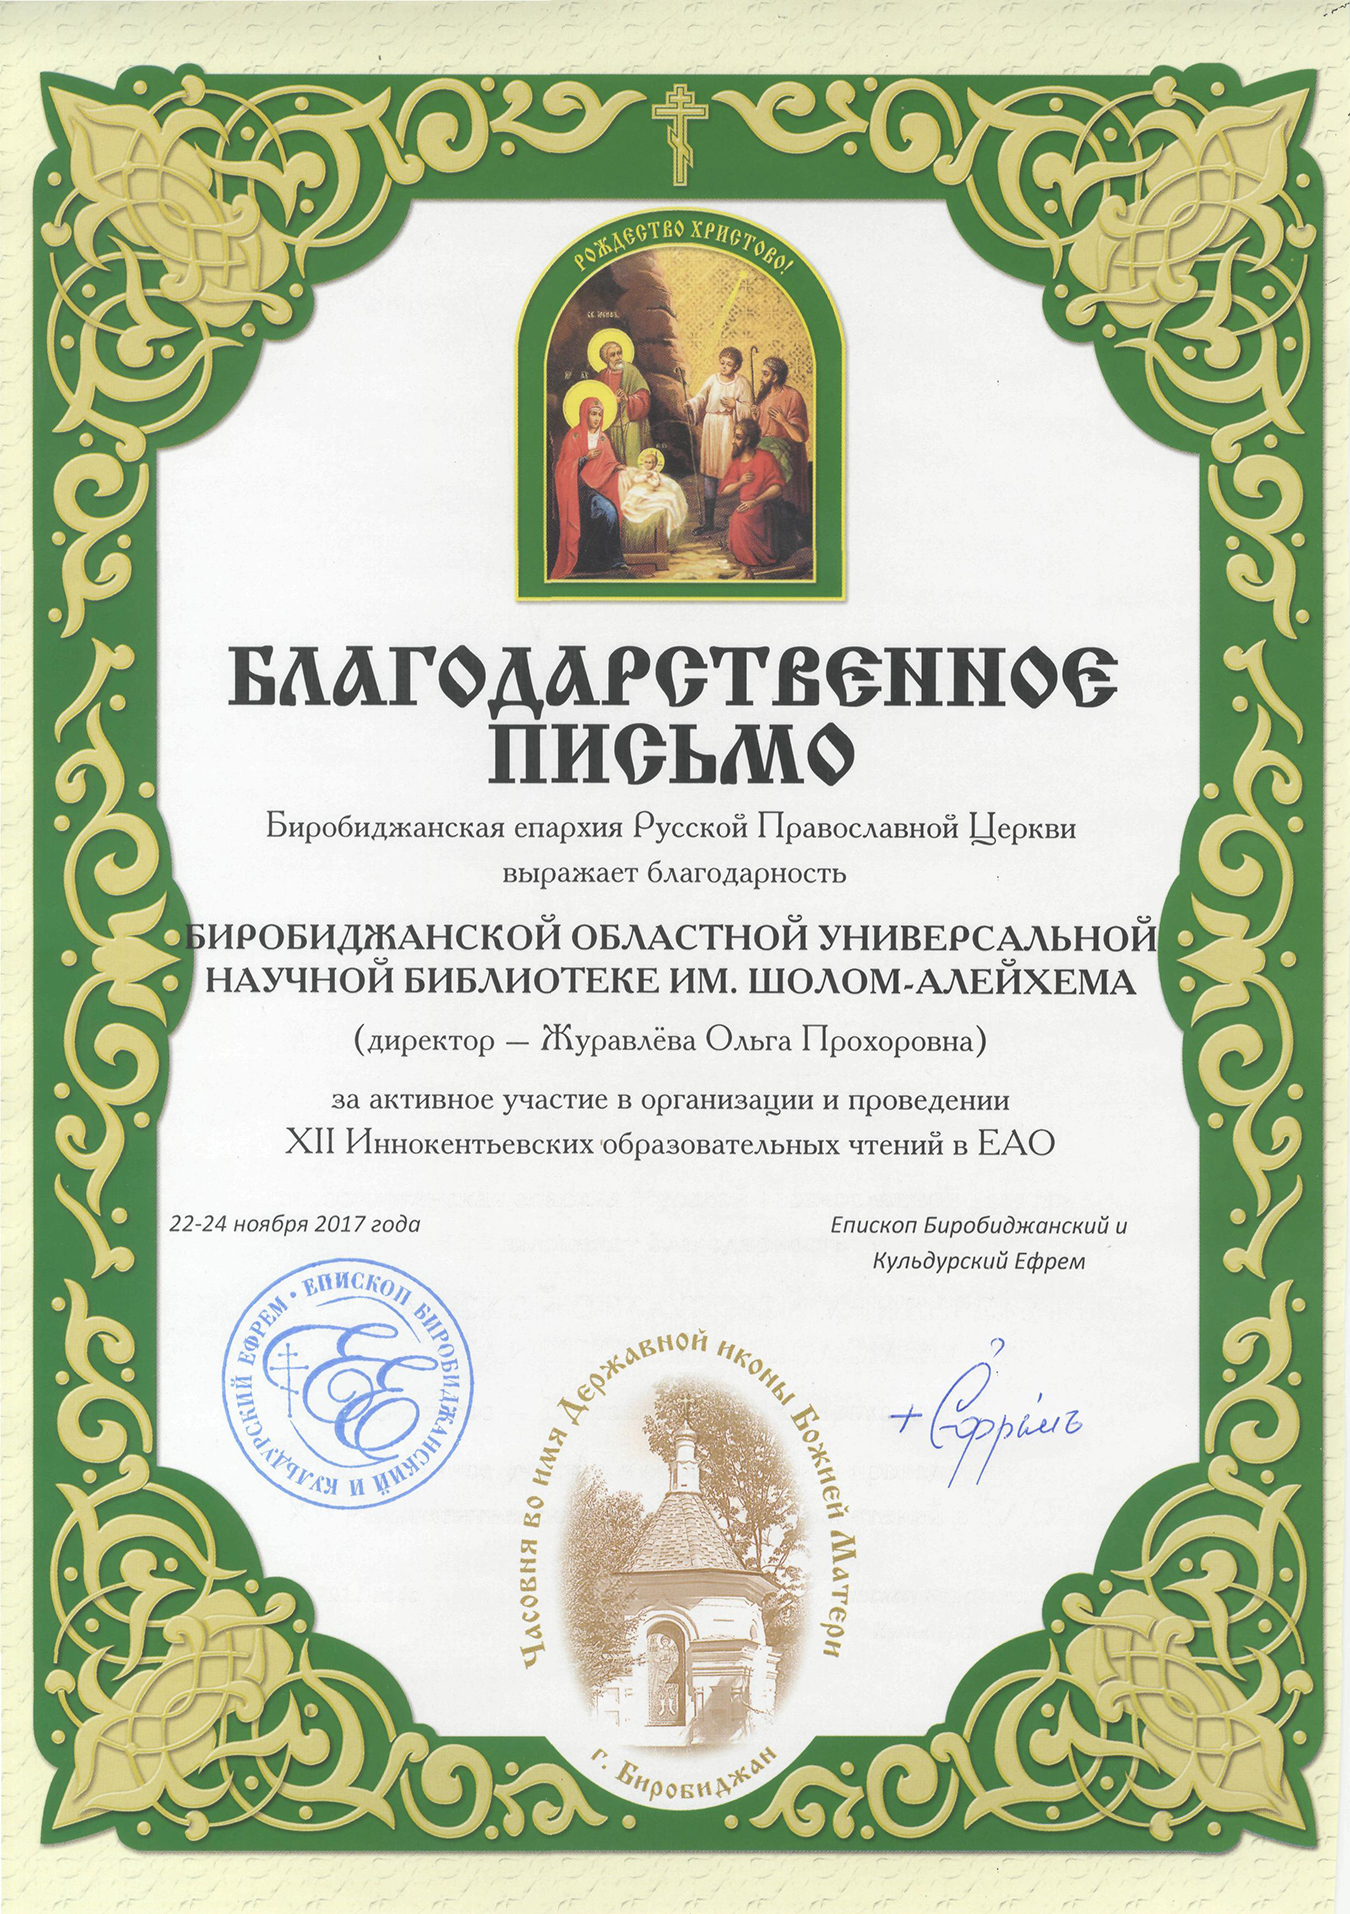 Благодарственное письмо Биробиджанской Епархии Русской Православной Церкви